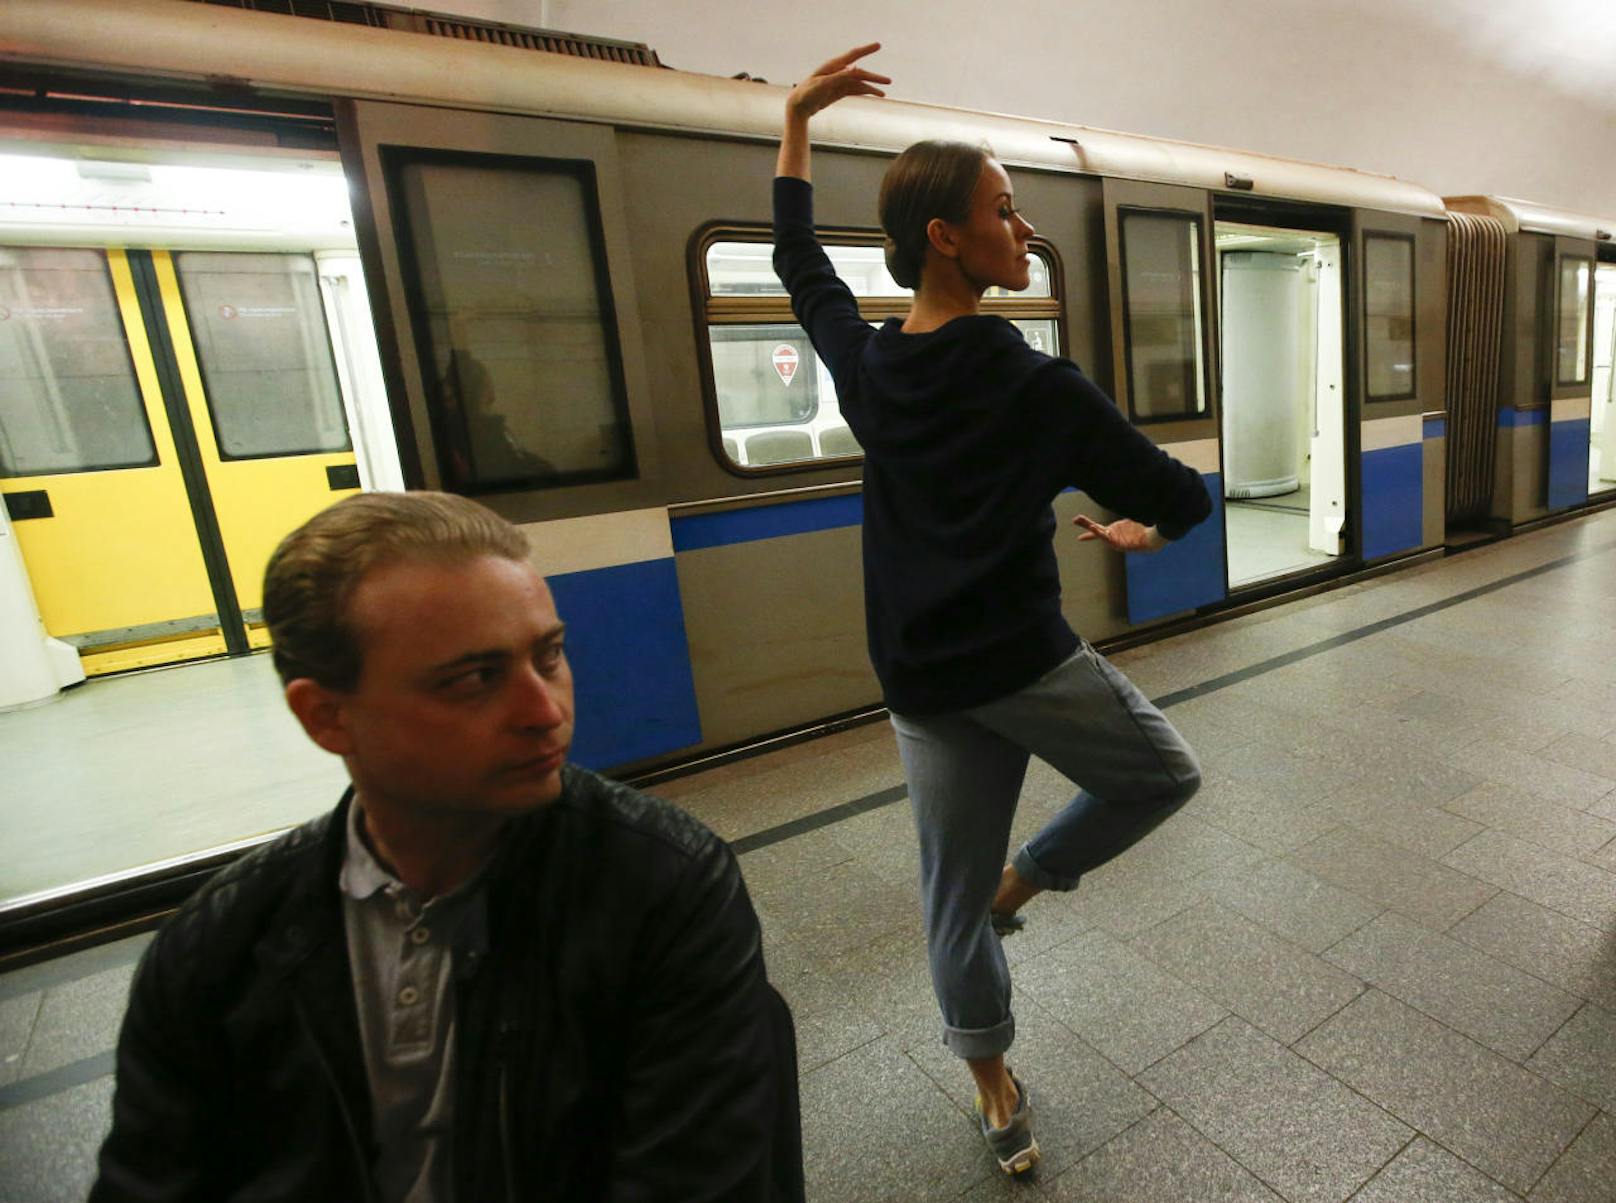 Beim Aufwärmen: Kreml-Ballett tanzt Nacht in U-Bahn-Station Novoslobodskaya in Moskau durch
Fotocredit: Reuters/Sergei Karpukhin